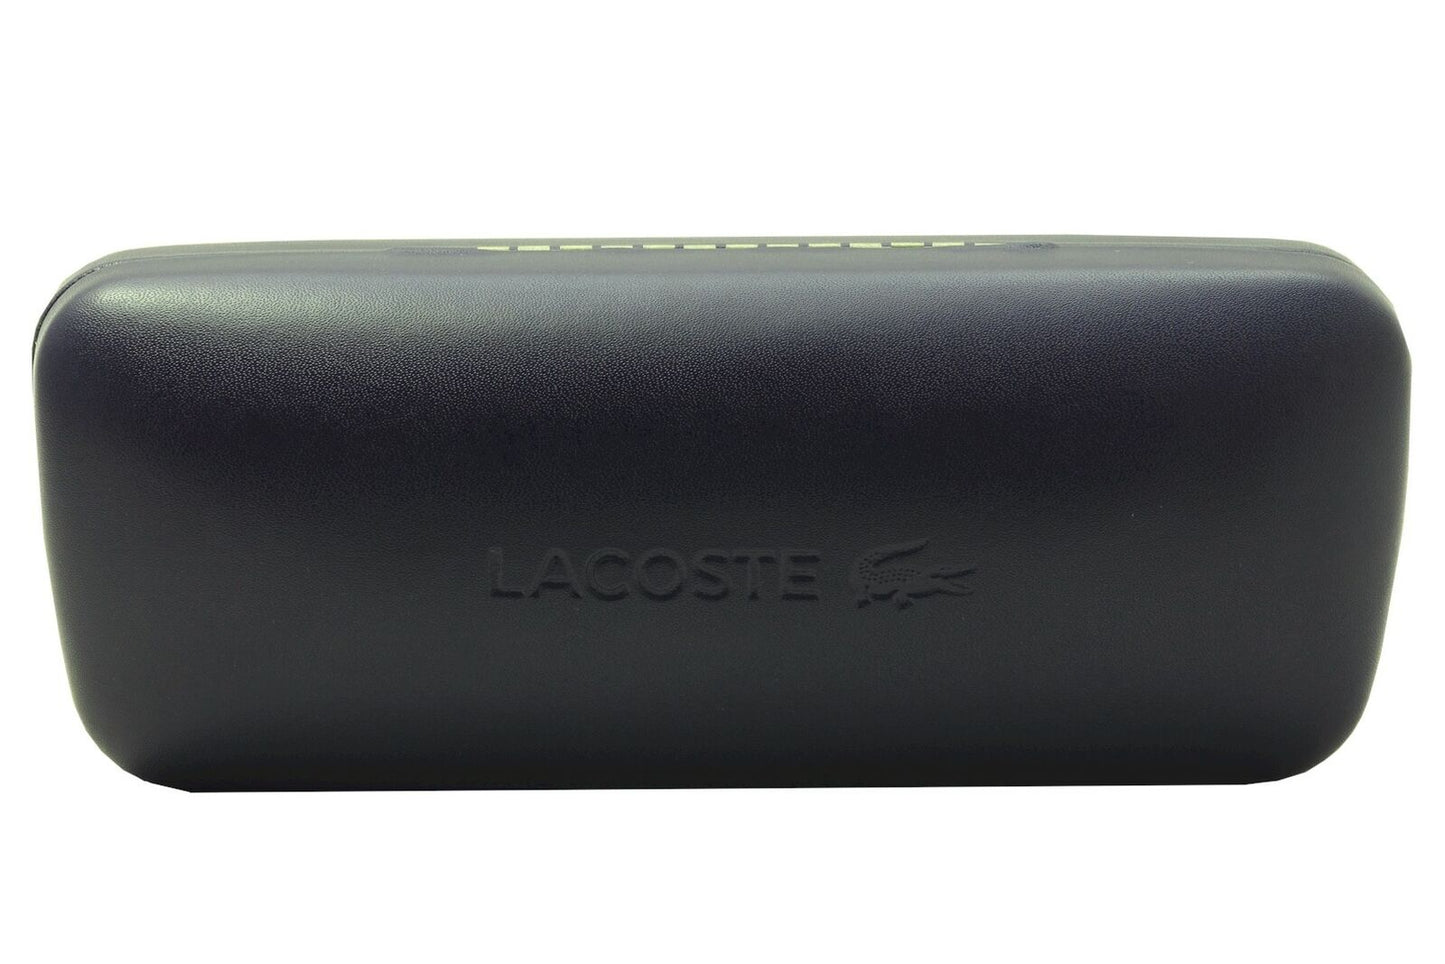 Lacoste L188S-035 59mm New Sunglasses